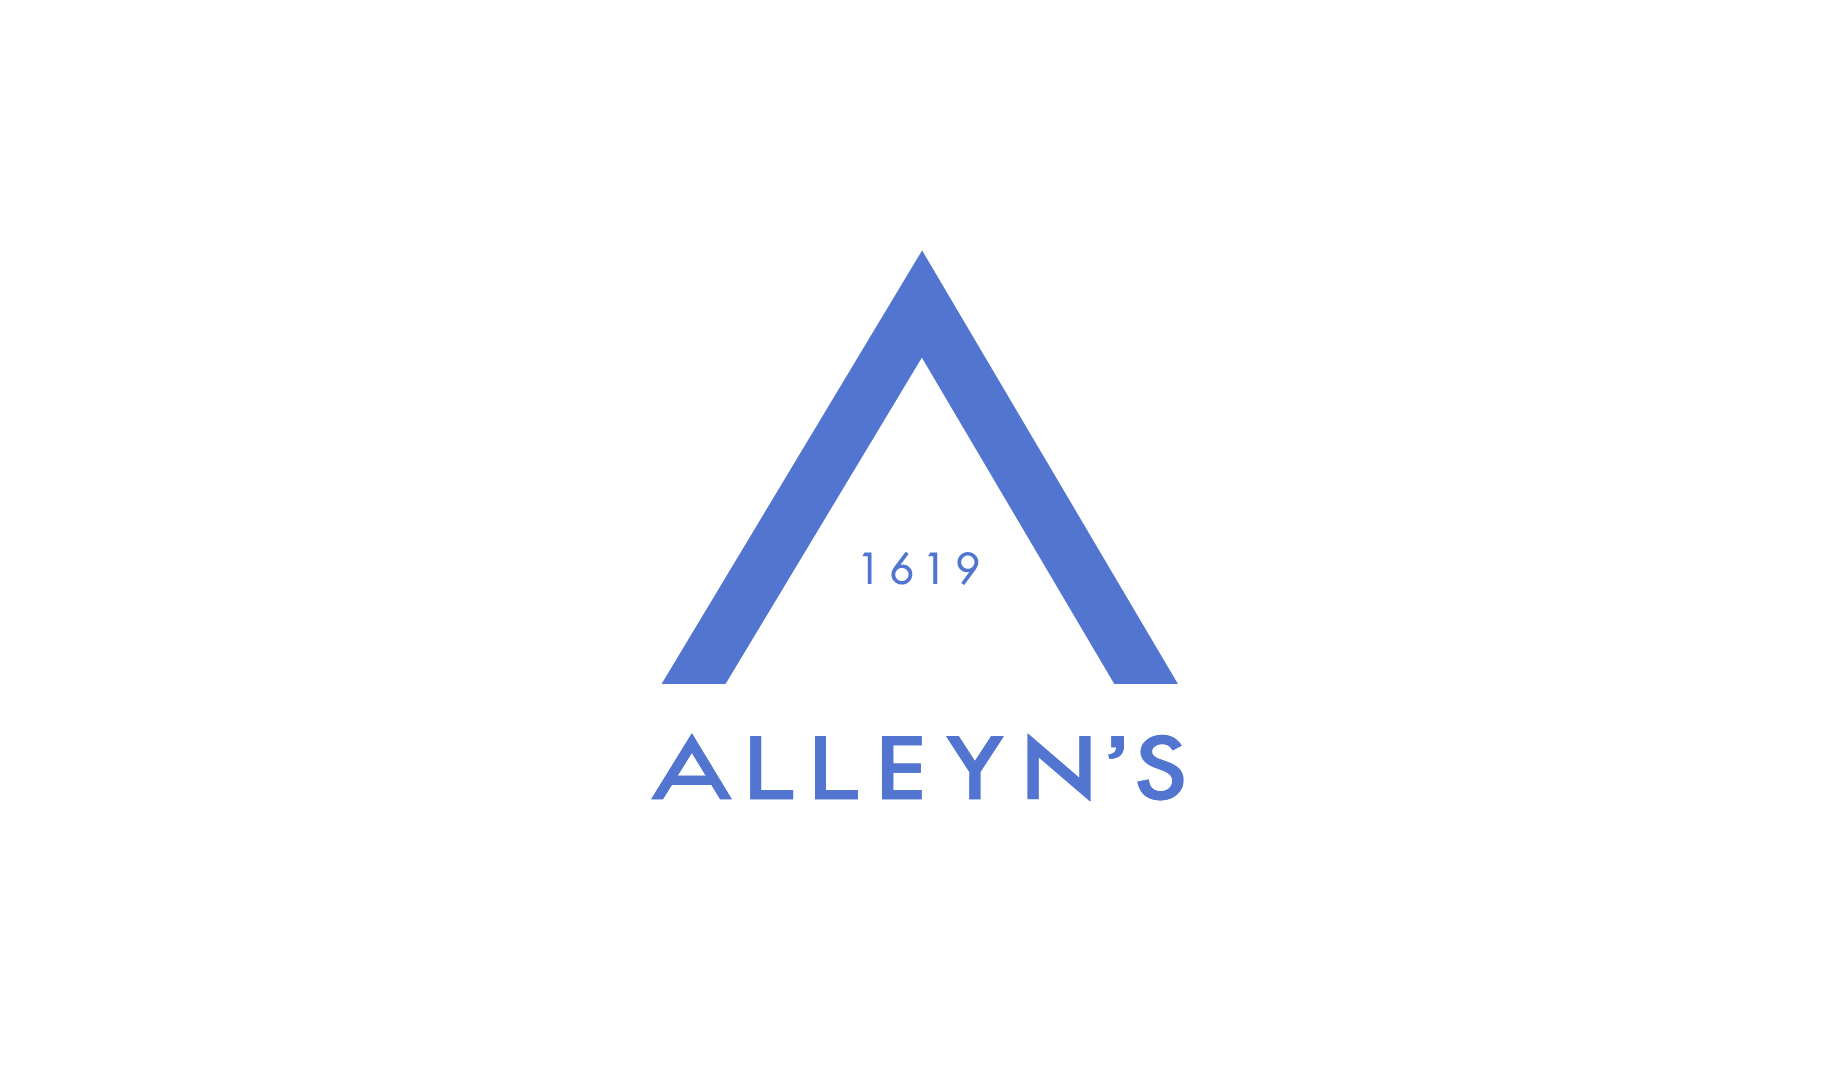 Alleyn’s School